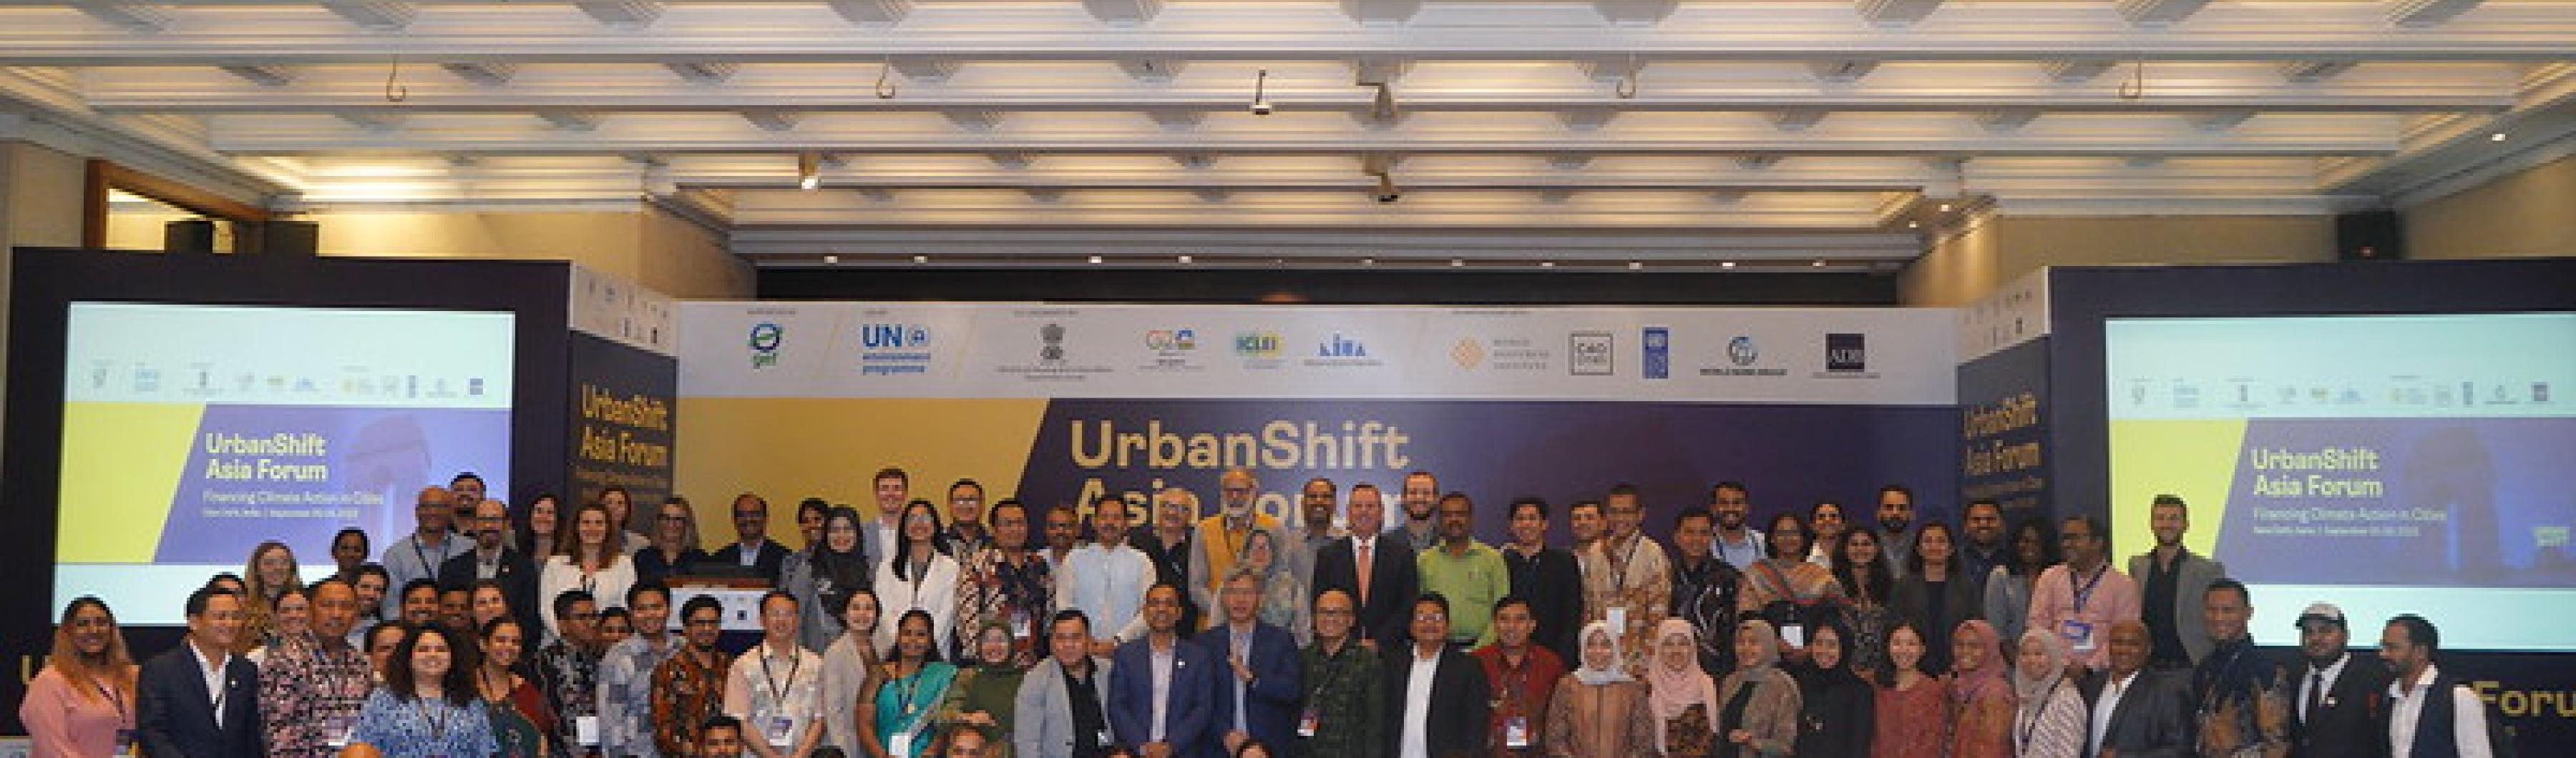 Les participants au forum asiatique UrbanShift se réunissent pour une photo de groupe